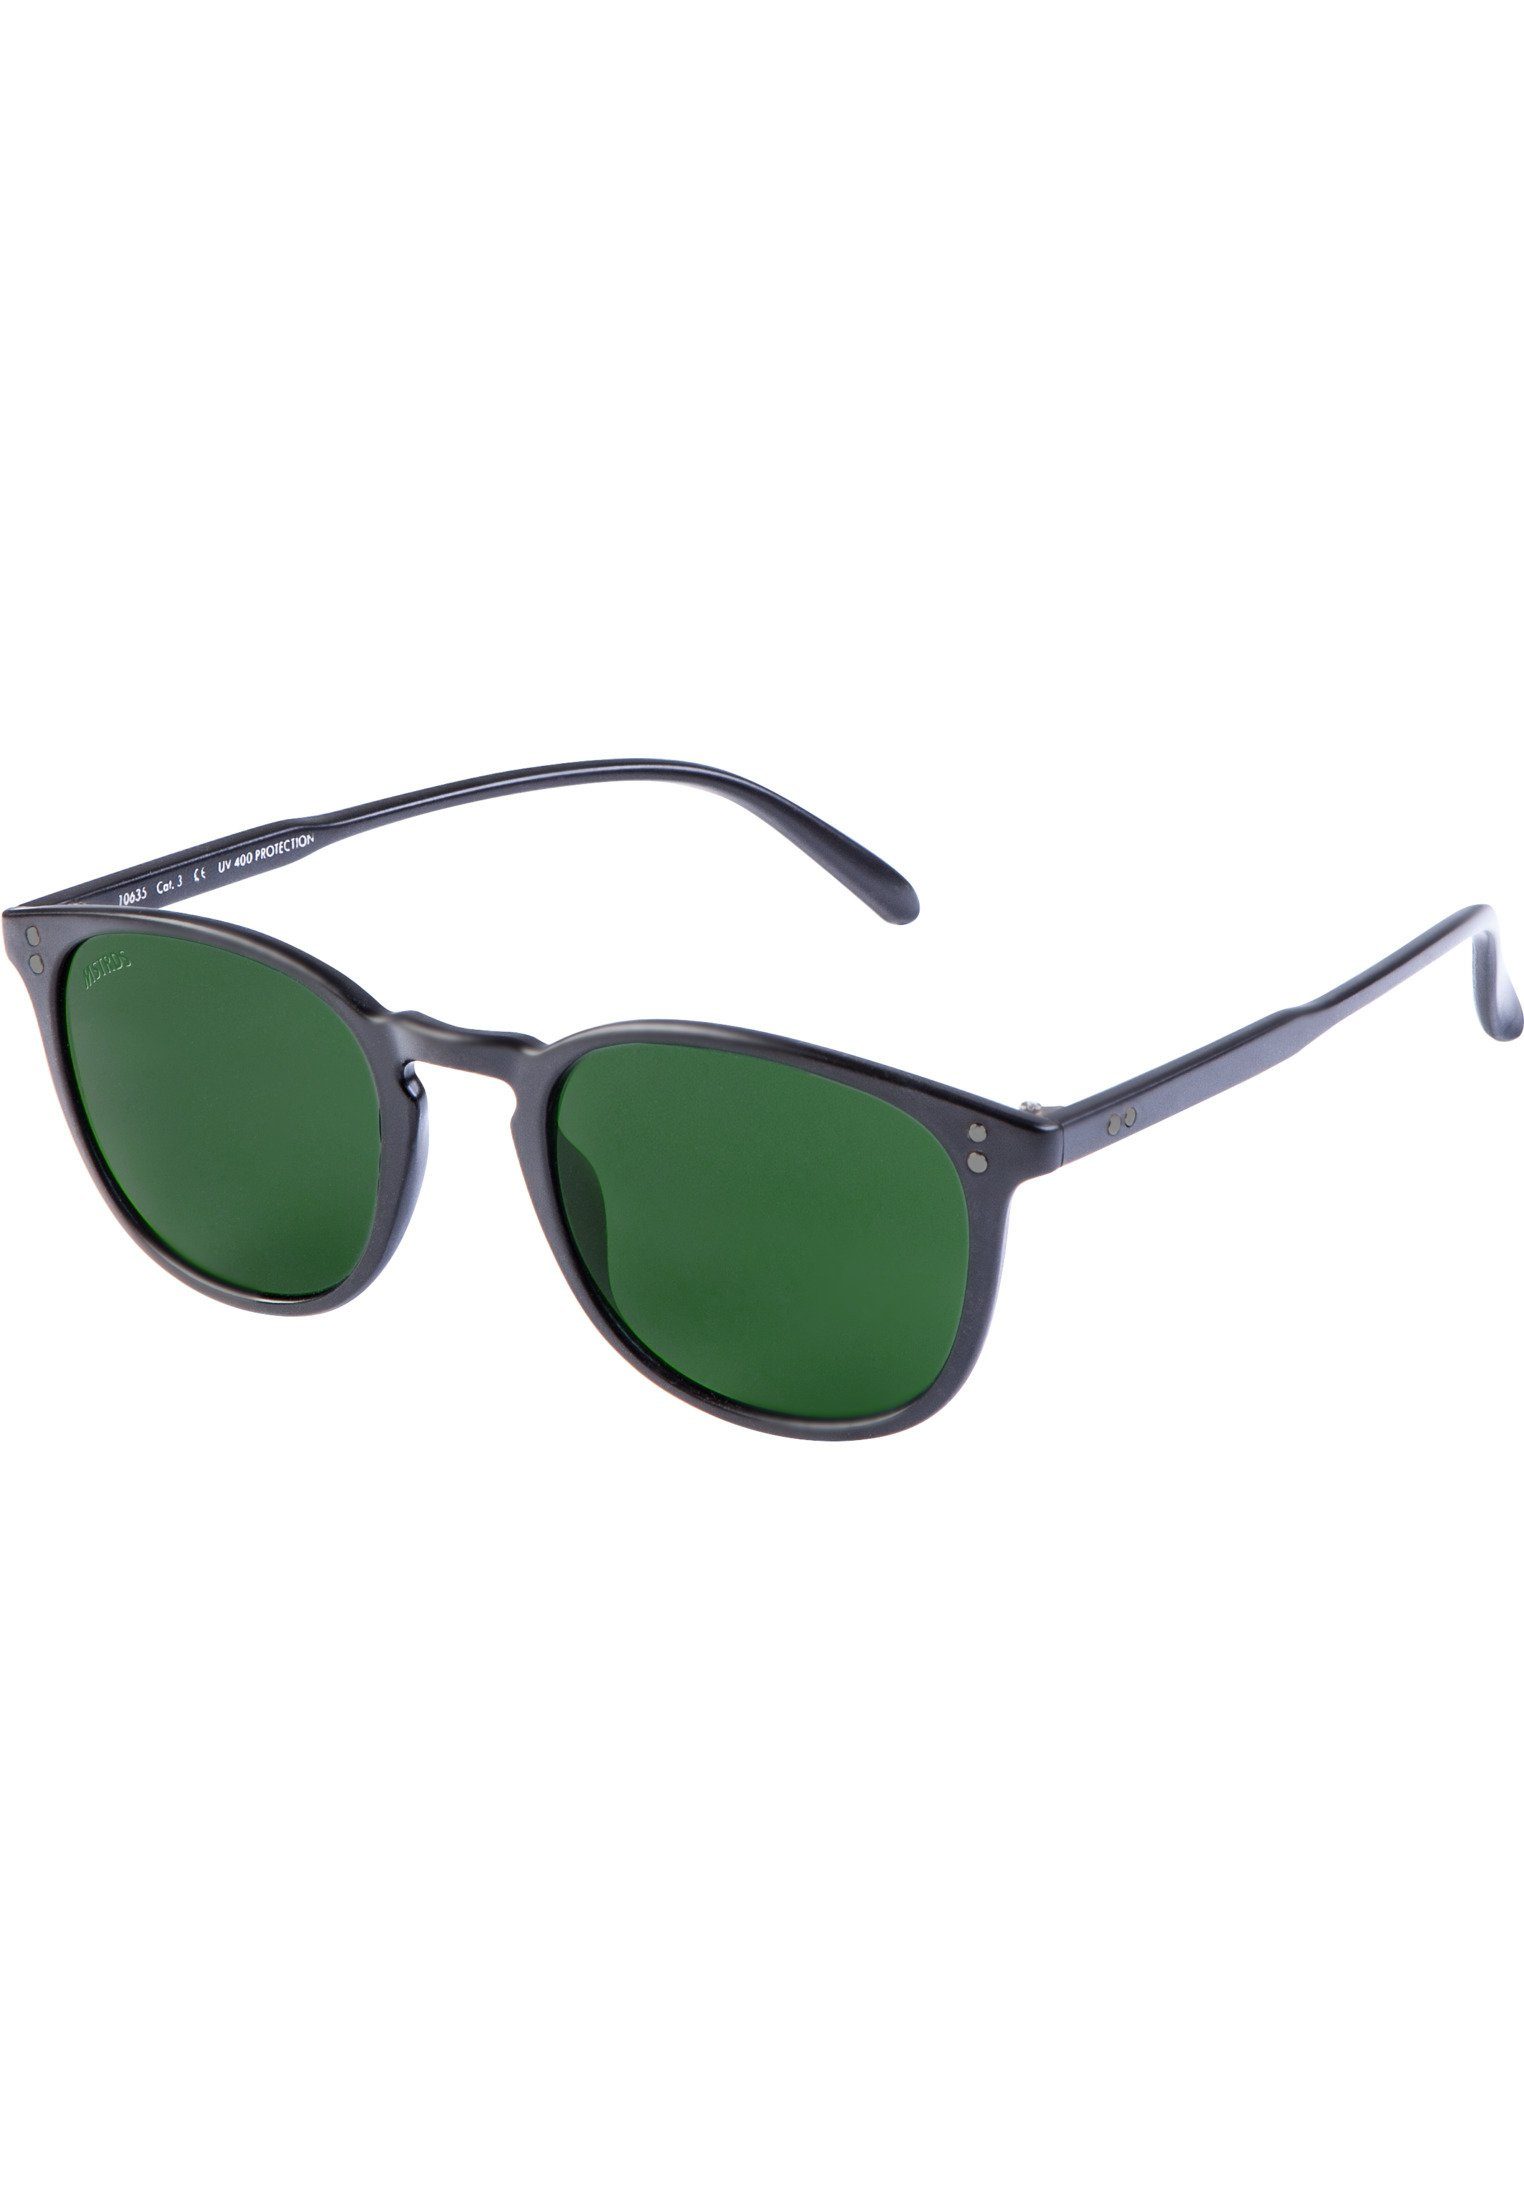 Sunglasses Sonnenbrille blk/grn Arthur MSTRDS Accessoires